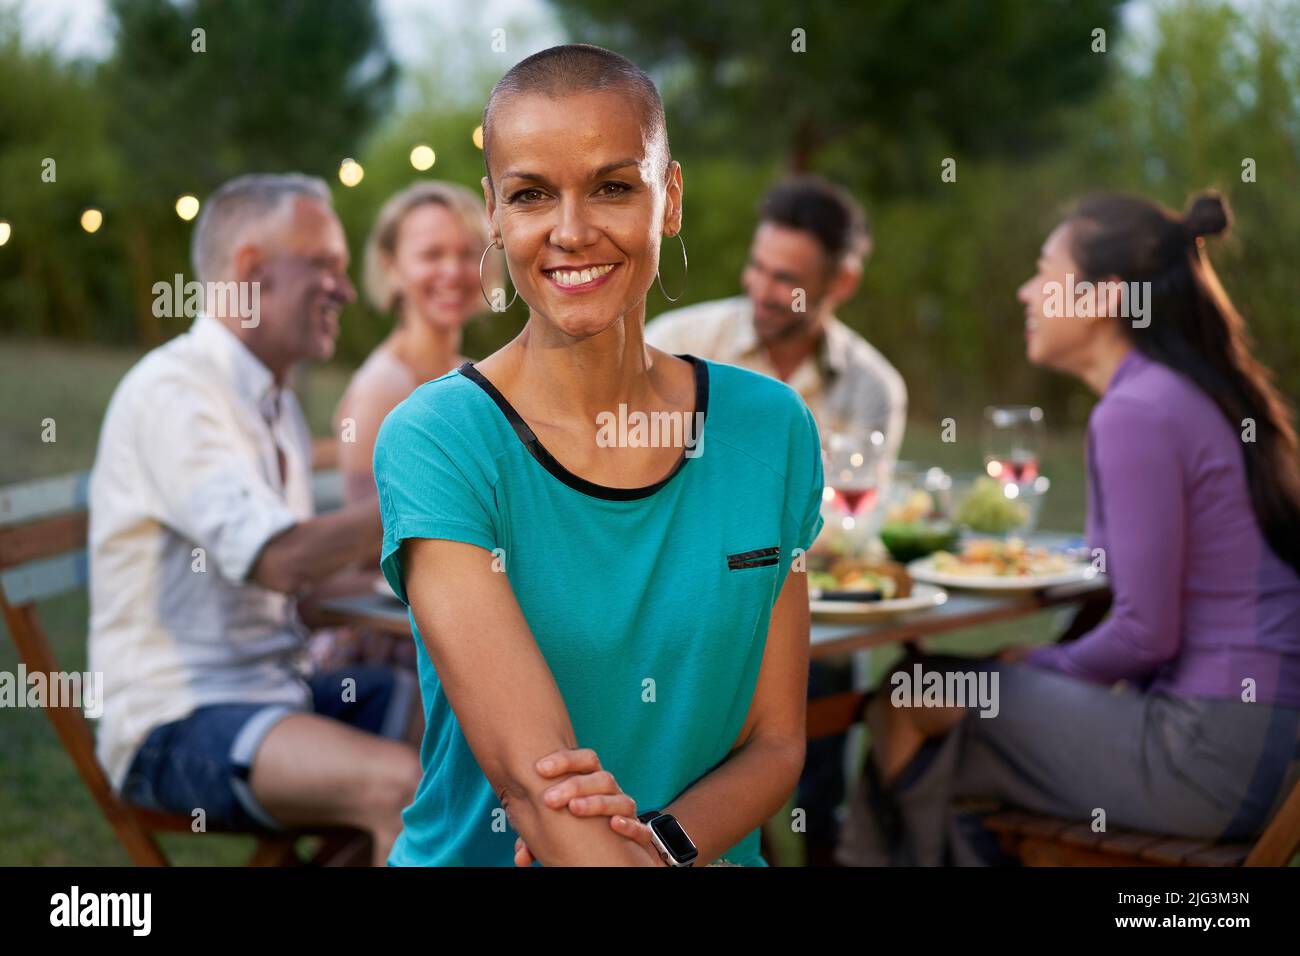 Ritratto di una donna con testa rasata che guarda la fotocamera. Gruppo di amici che cenano all'aperto su un ristorante con terrazza o casa sul cortile. Amici che hanno Foto Stock